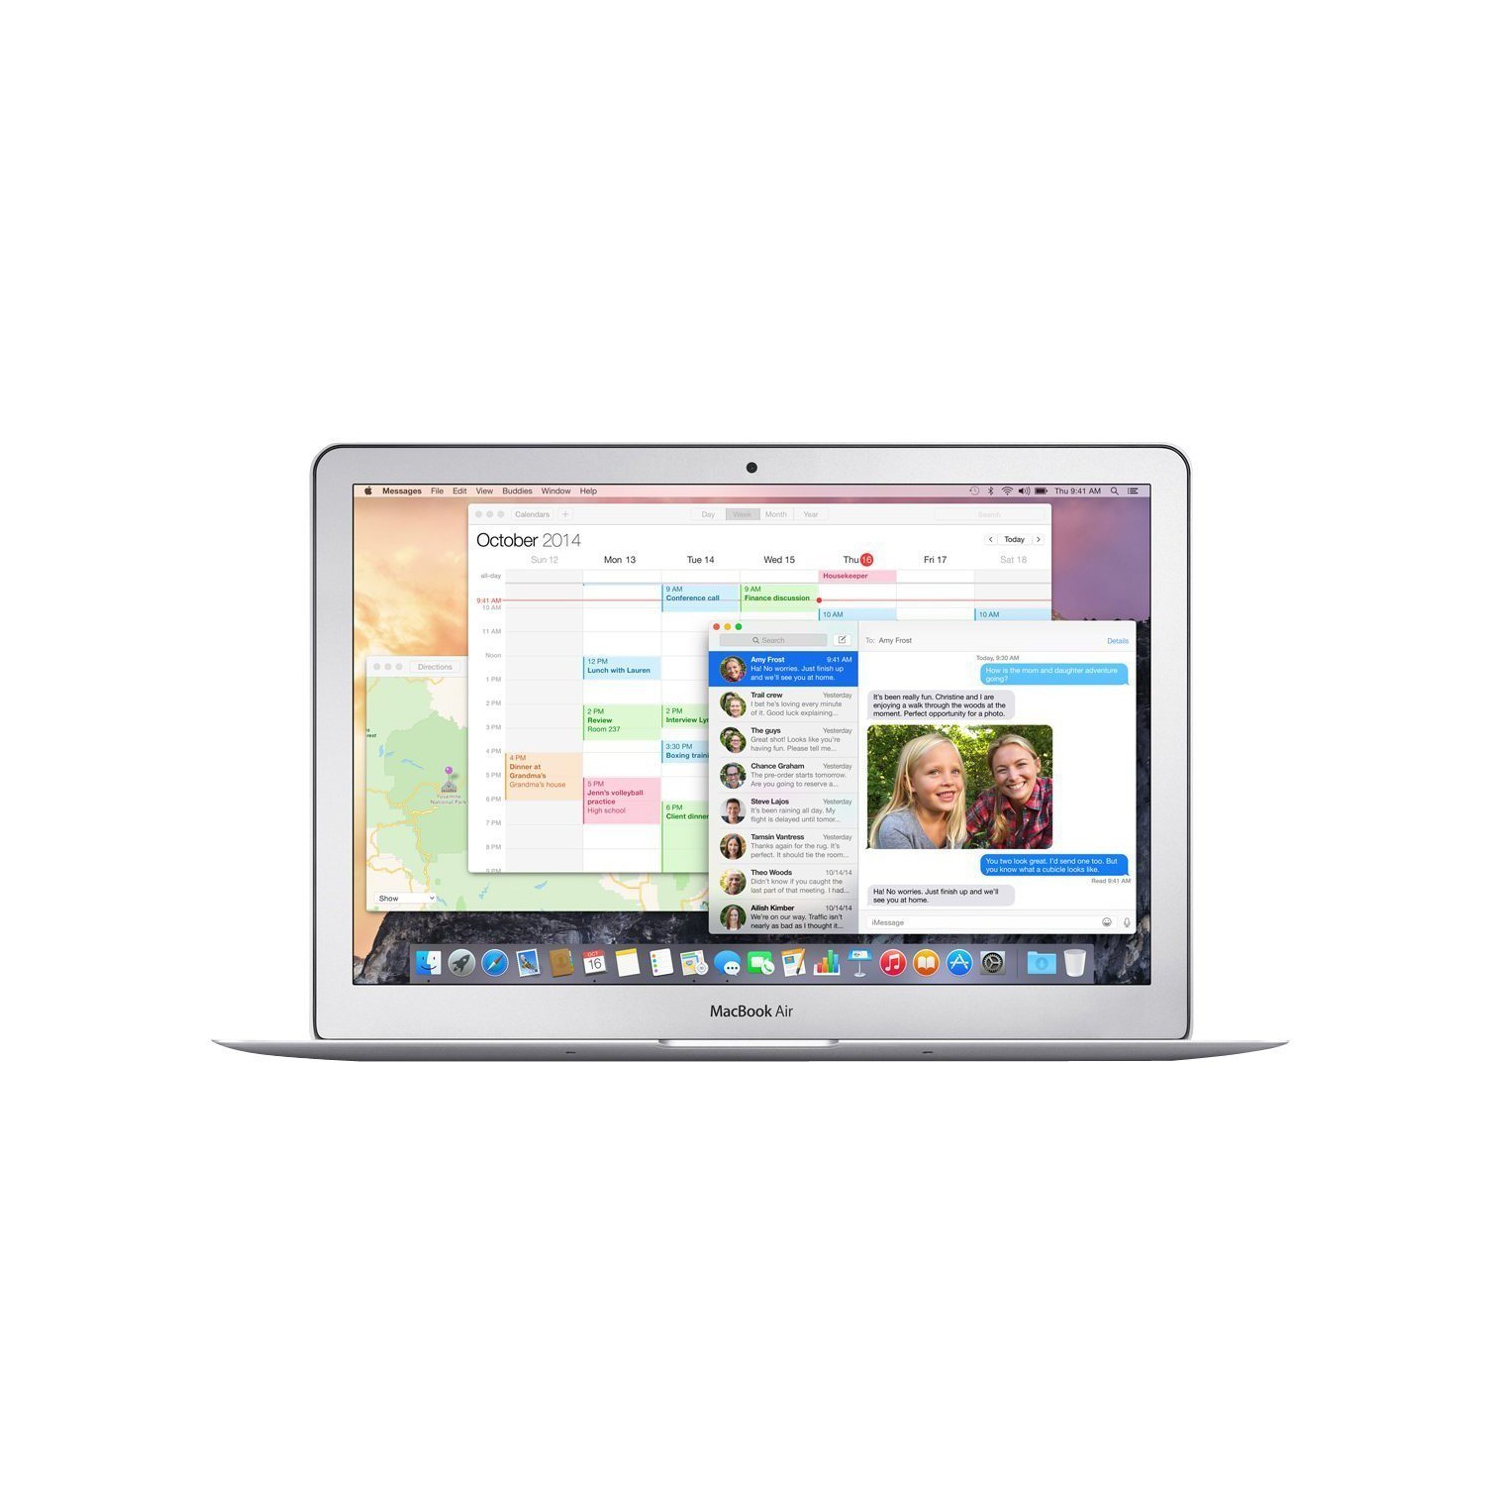 Apple MacBook Air MJVM2LL/A 11.6-Inch Laptop (1.6 GHz Intel Core